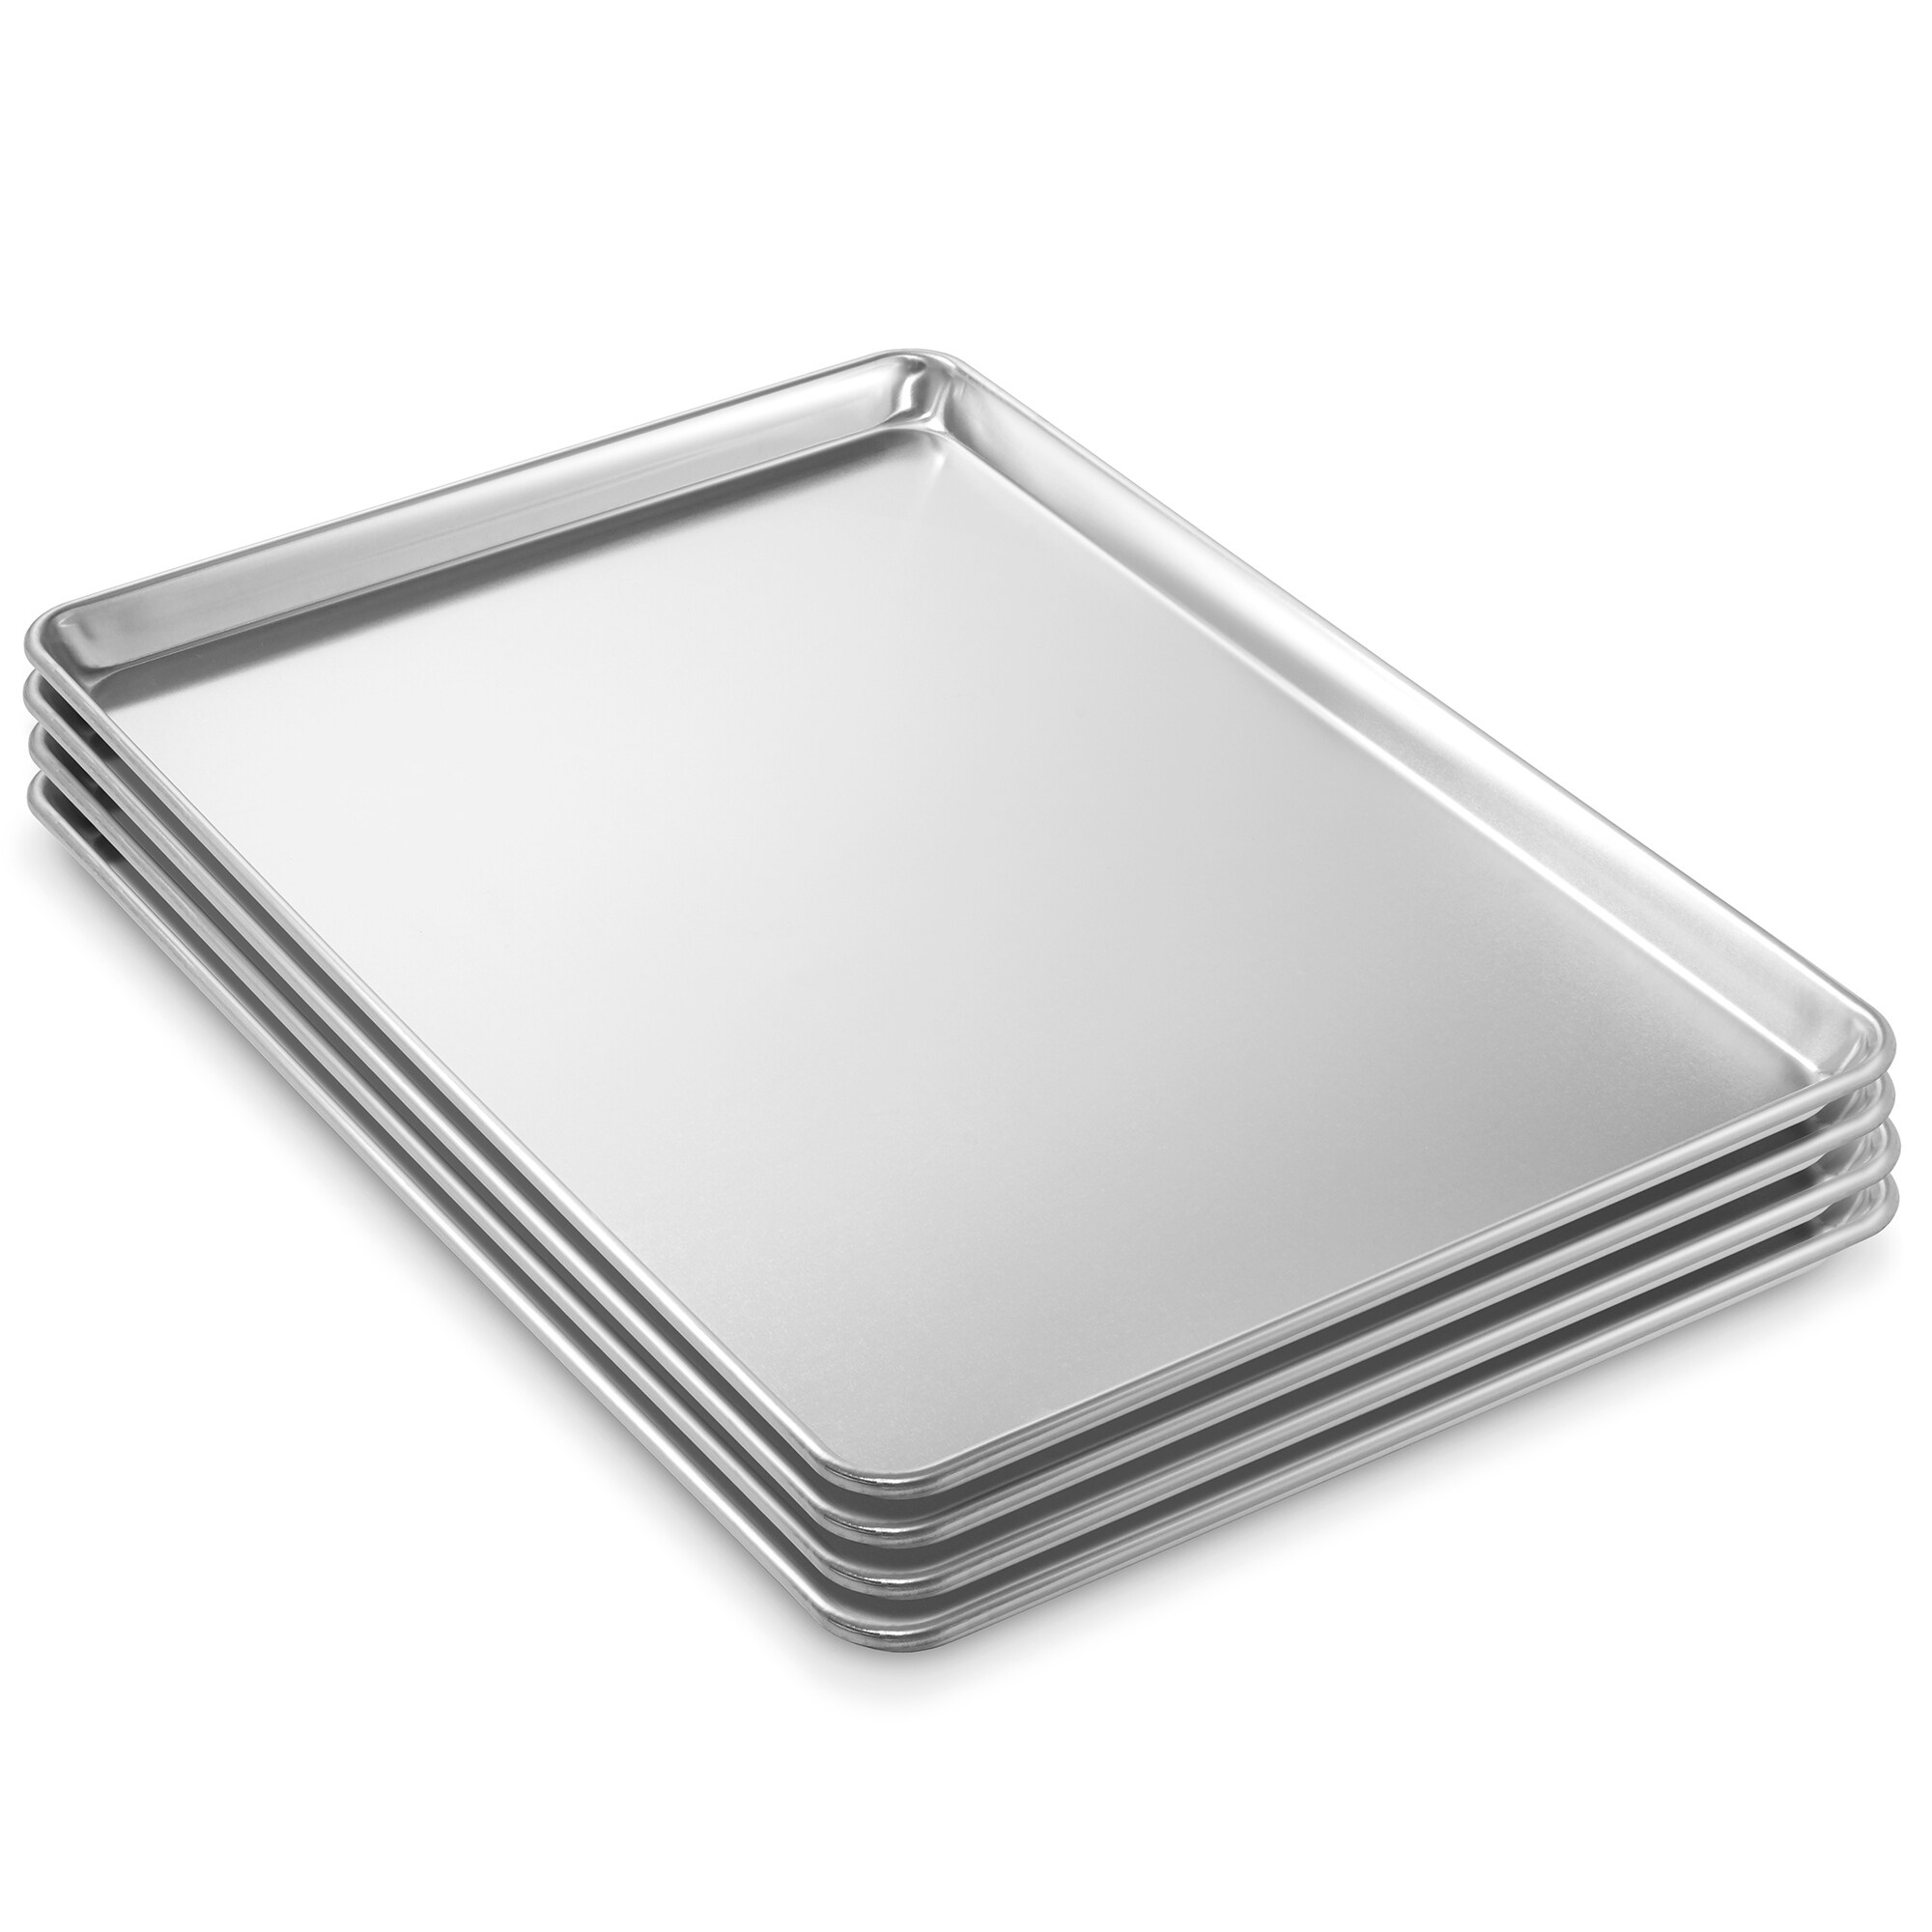 Anolon Pro-Bake Bakeware Aluminized Steel Half Sheet Baking Pan Set,  2-Piece, Silver